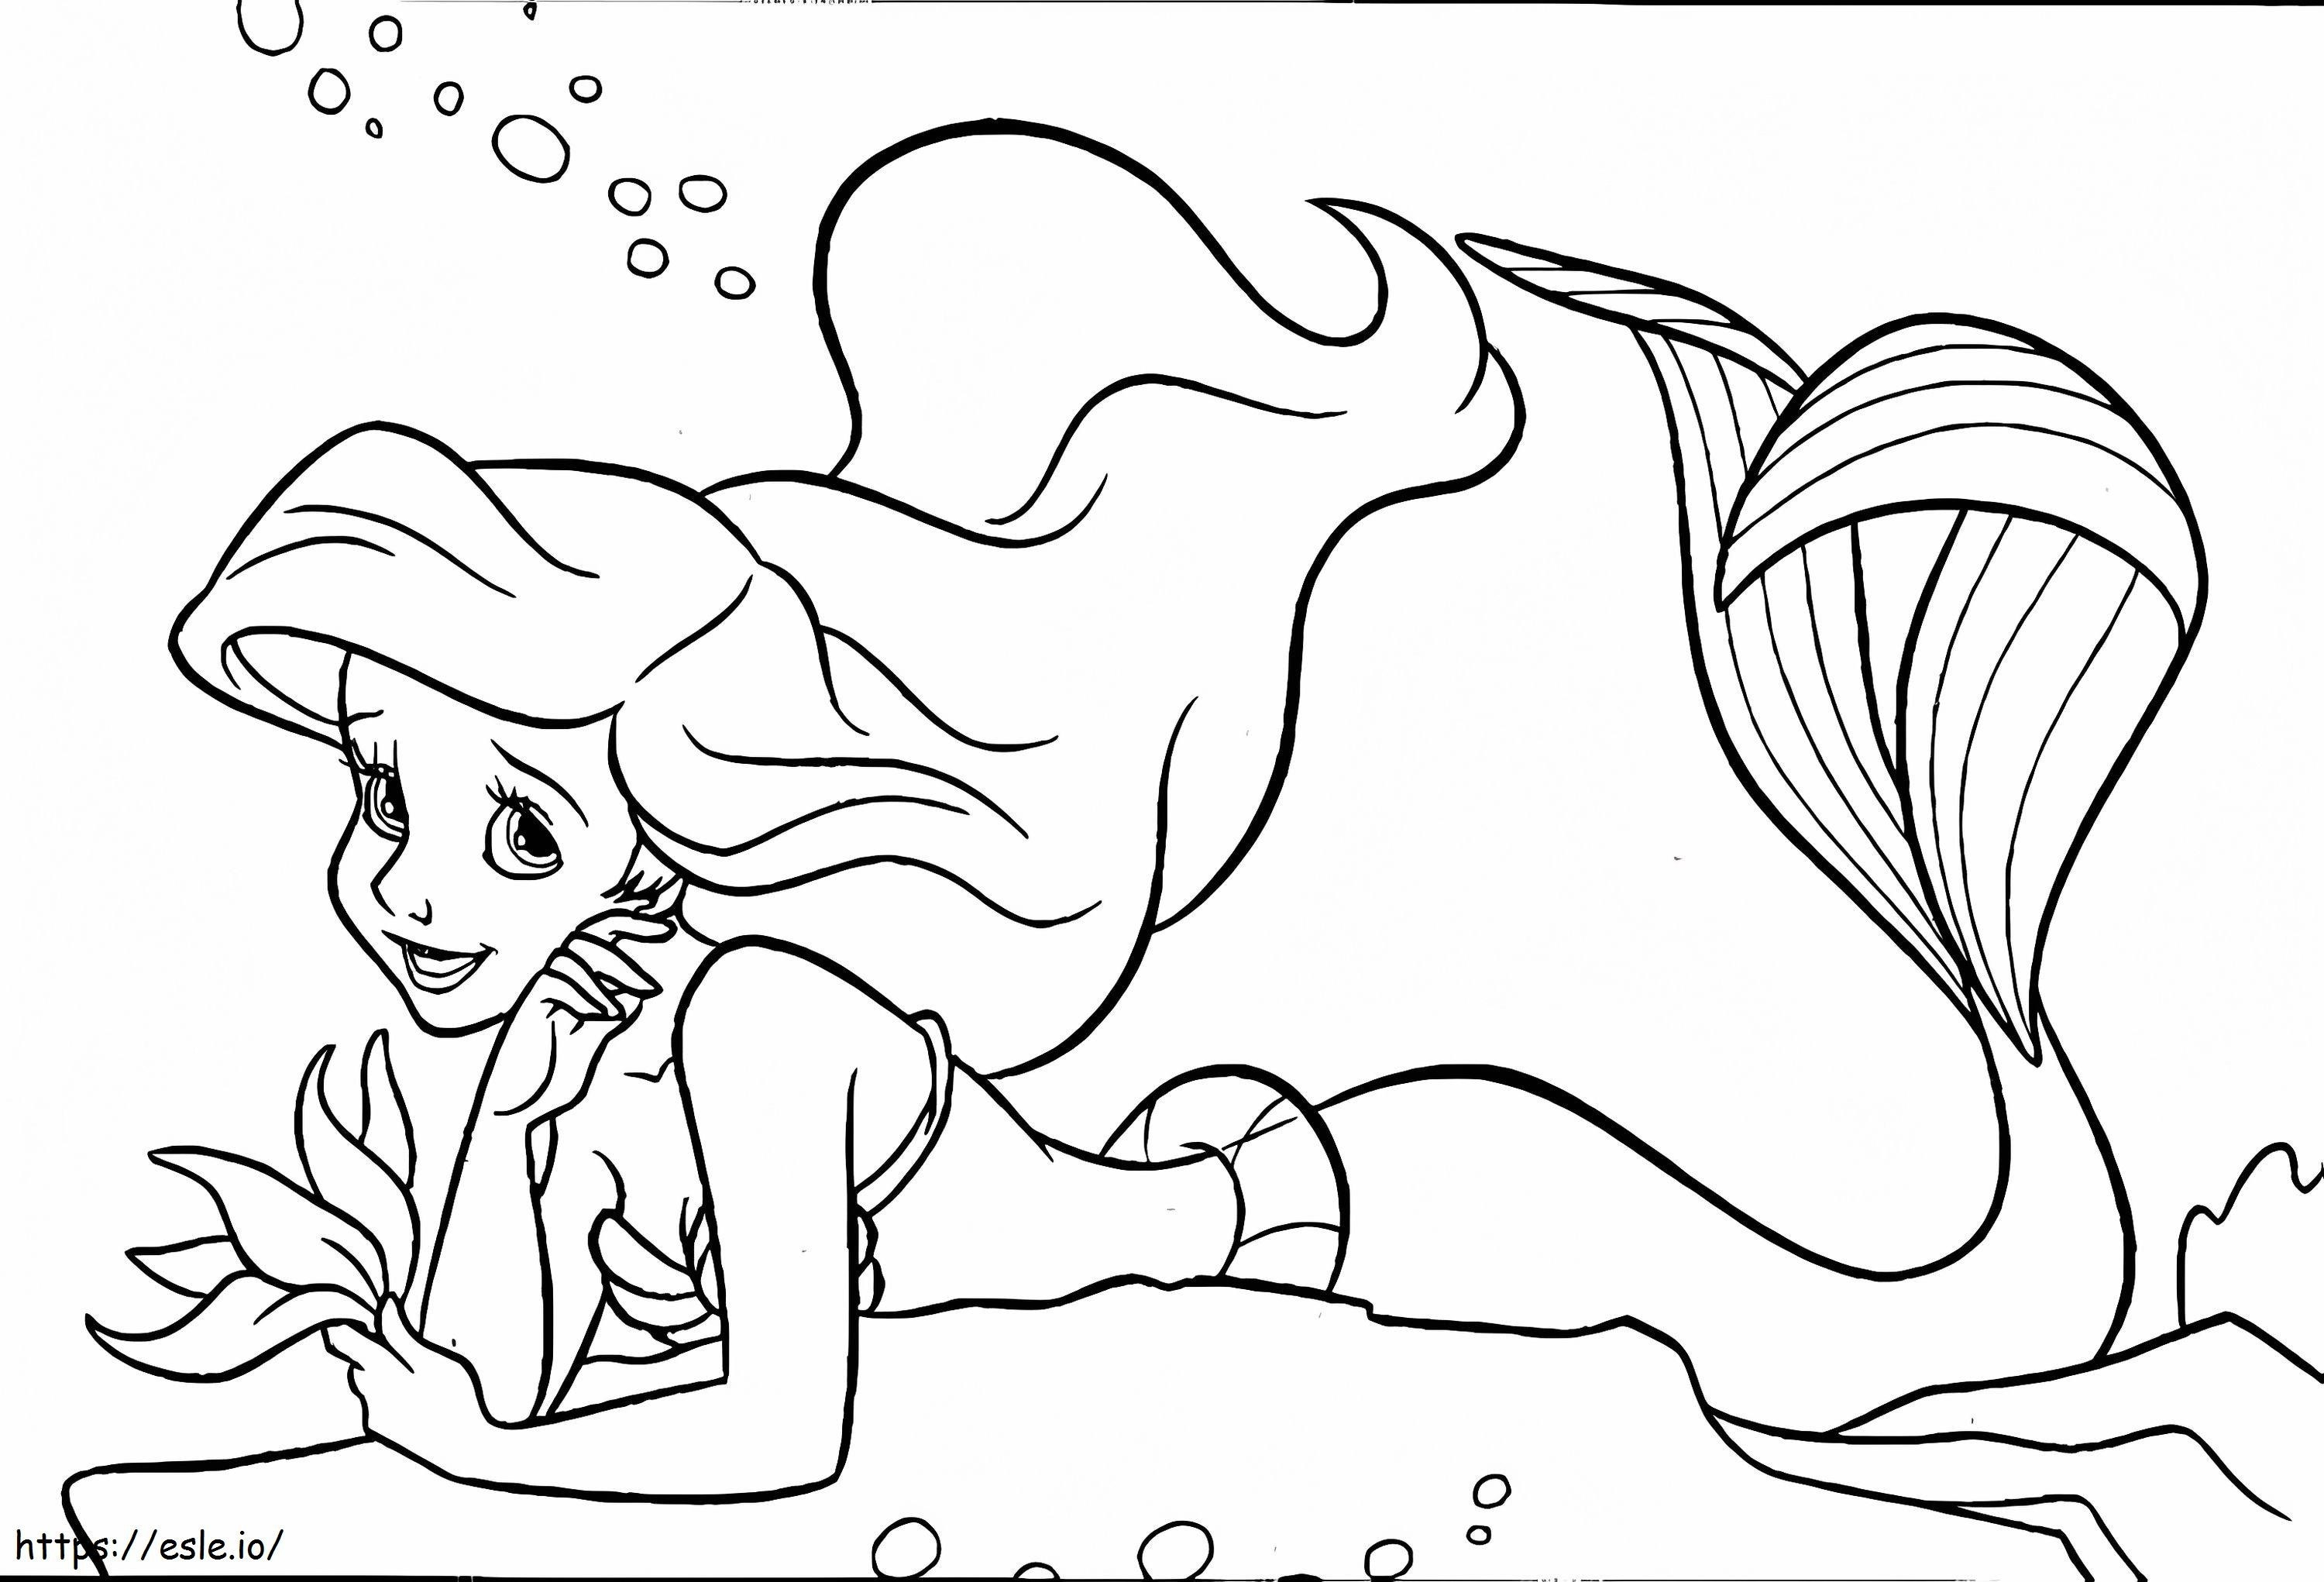 Coloriage Grande Sirène Ariel à imprimer dessin